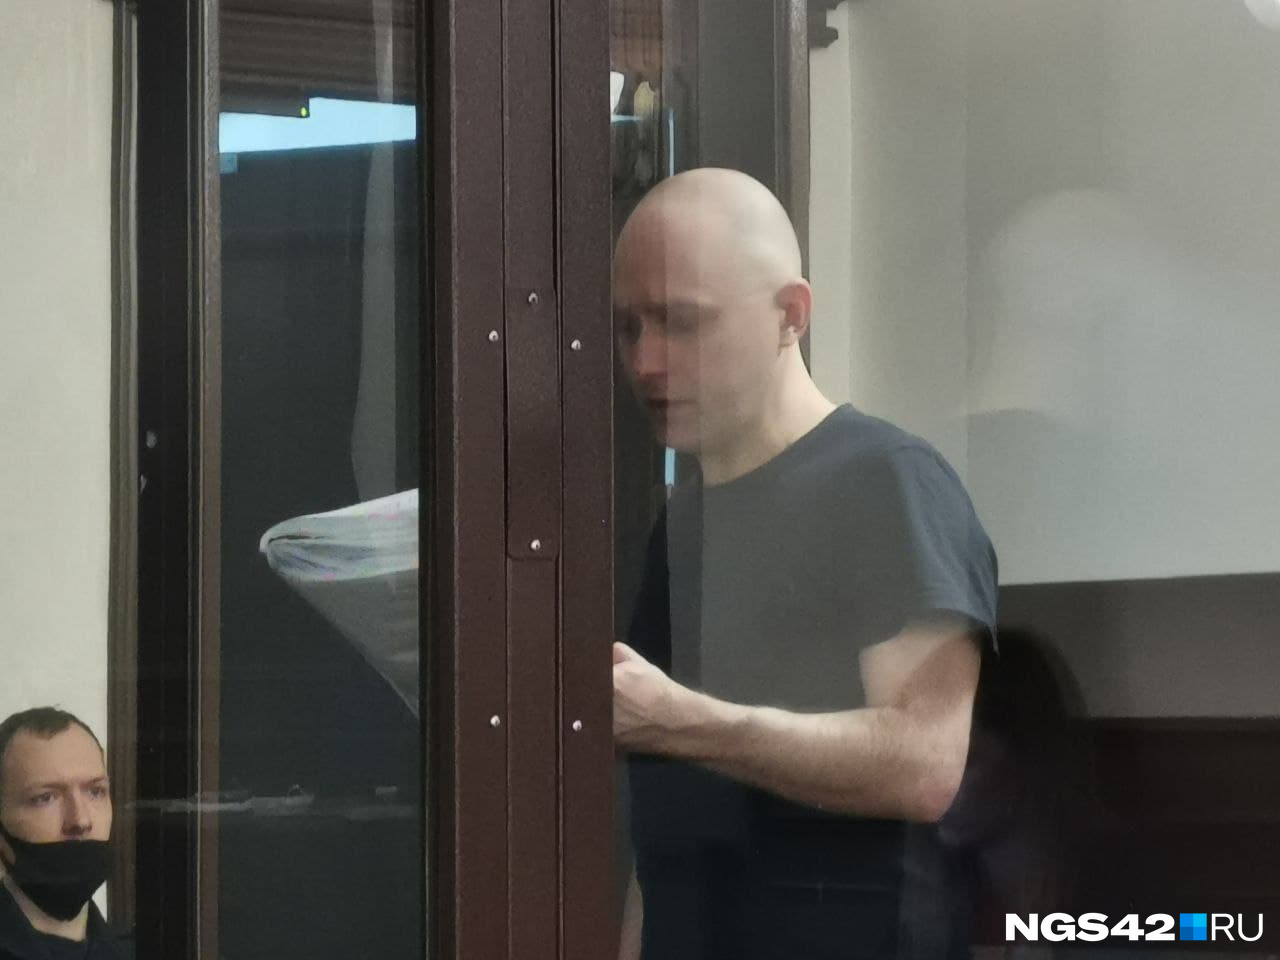 Никита Чередниченко говорит уже несколько часов без остановки. Сейчас он снял маску, которая, наверное, мешала ему. 